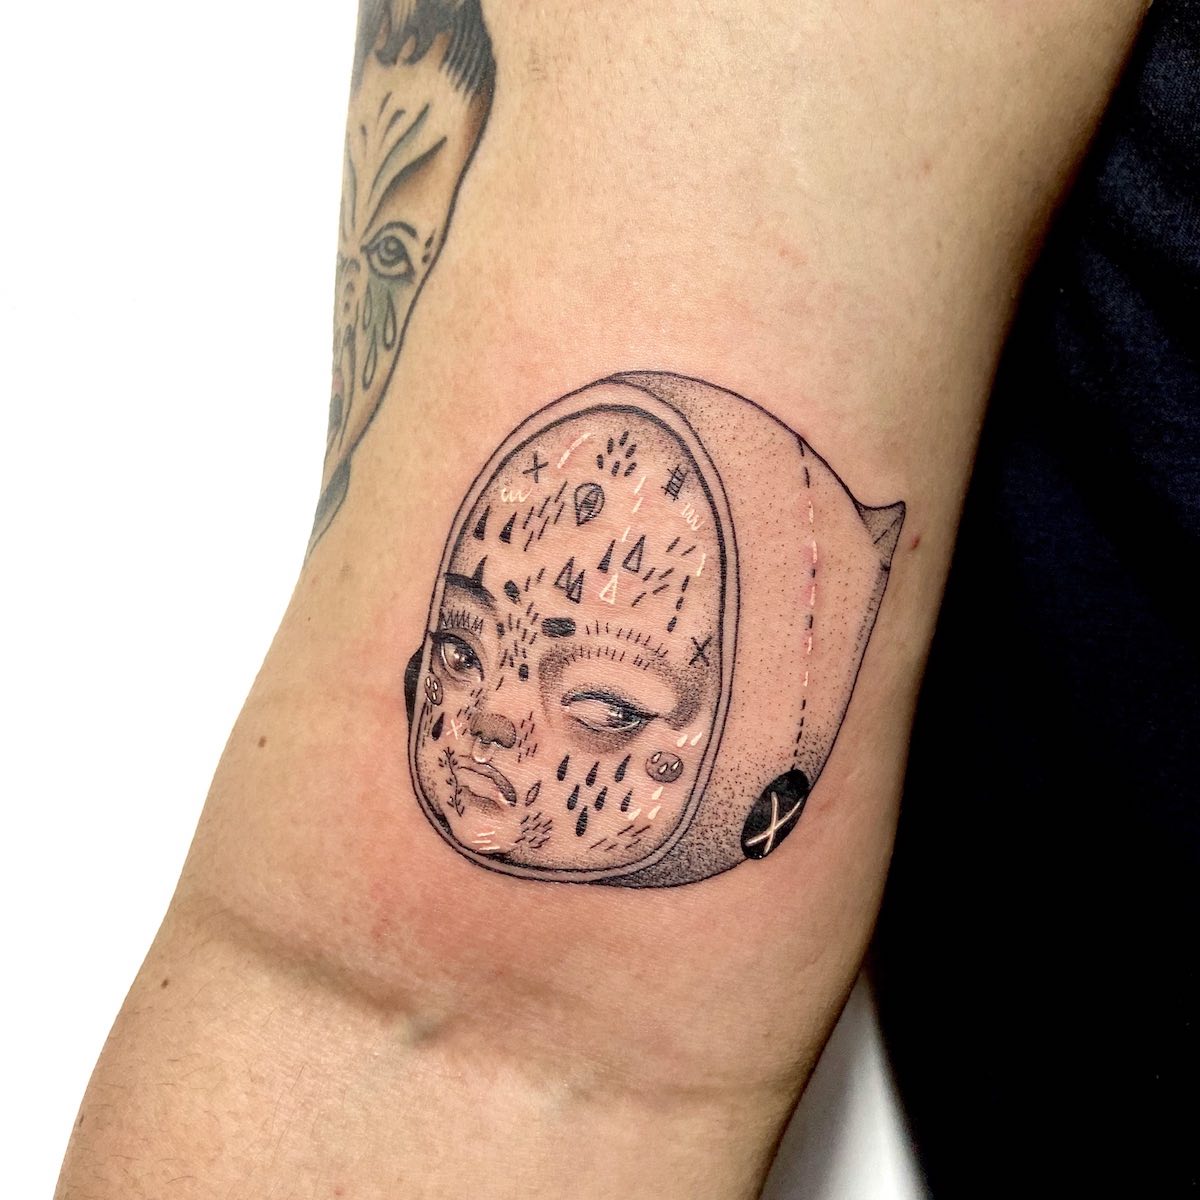 Tattoo by Gigie